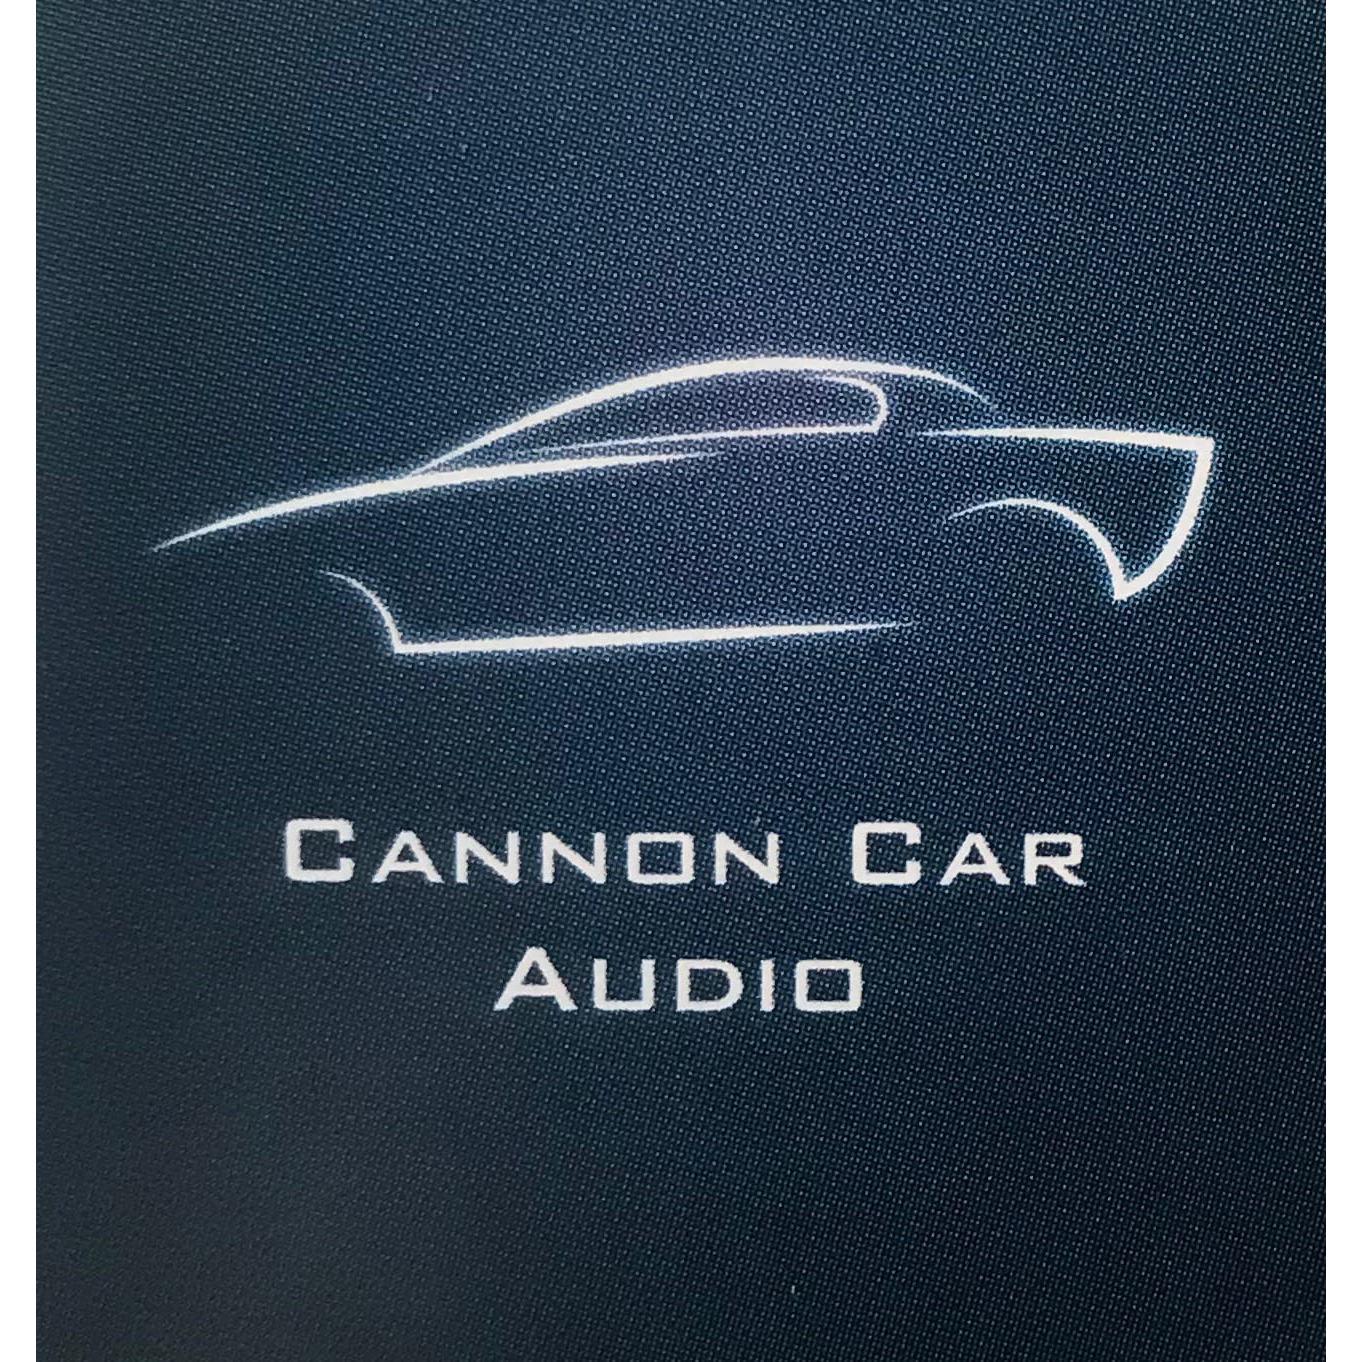 Cannon Car Audio - Waterlooville, Hampshire PO8 0TG - 02392 598052 | ShowMeLocal.com